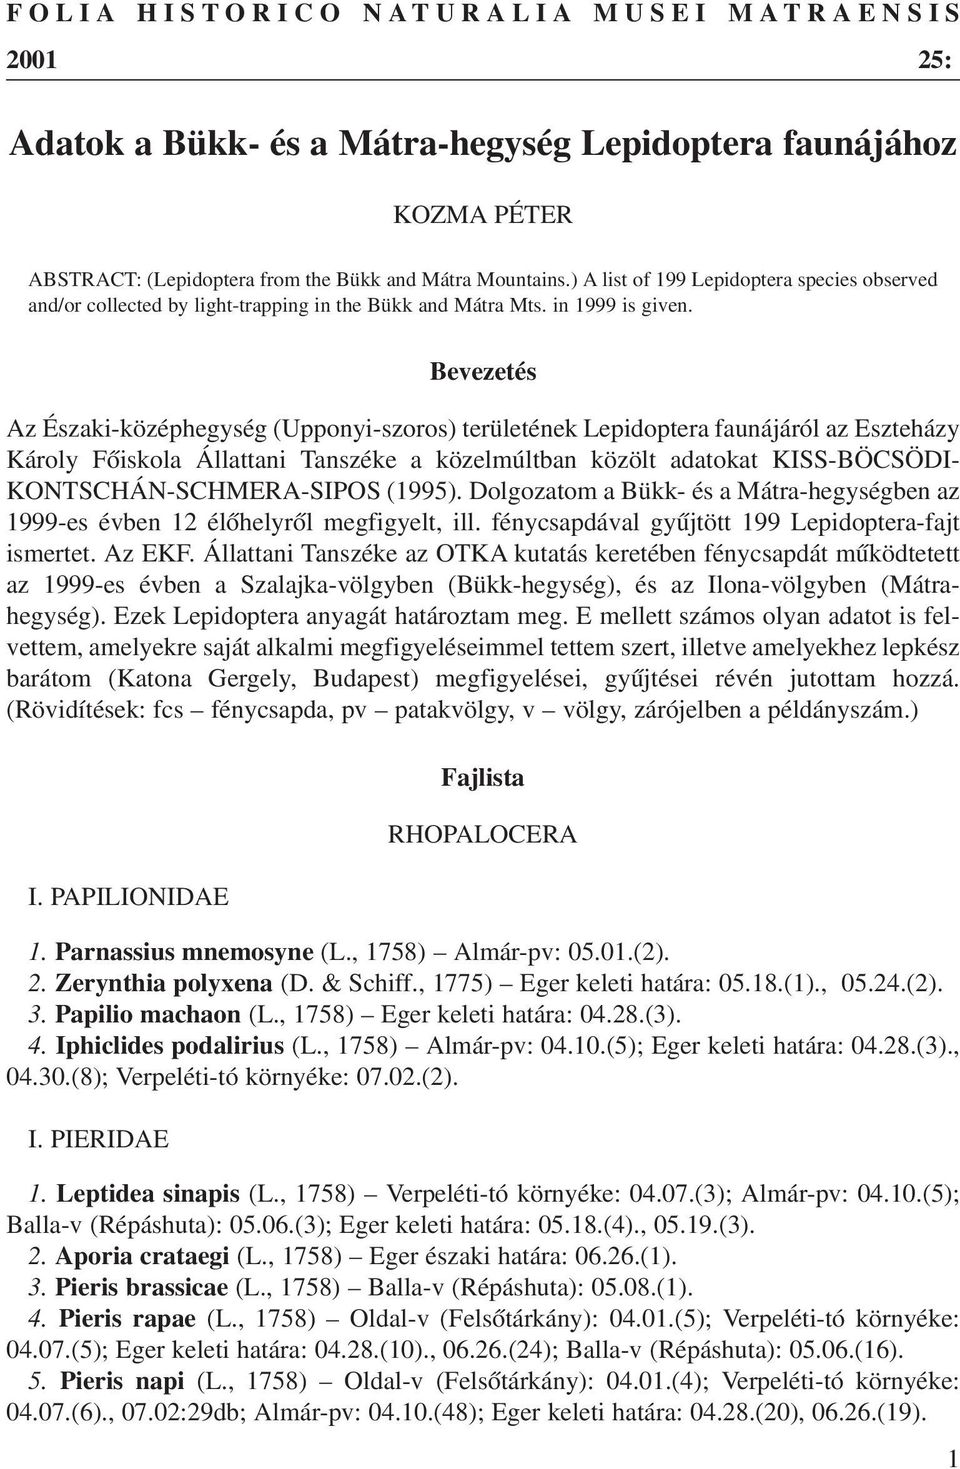 Bevezetés Az Északi-középhegység (Upponyi-szoros) területének Lepidoptera faunájáról az Eszteházy Károly Fõiskola Állattani Tanszéke a közelmúltban közölt adatokat KISS-BÖCSÖDI-